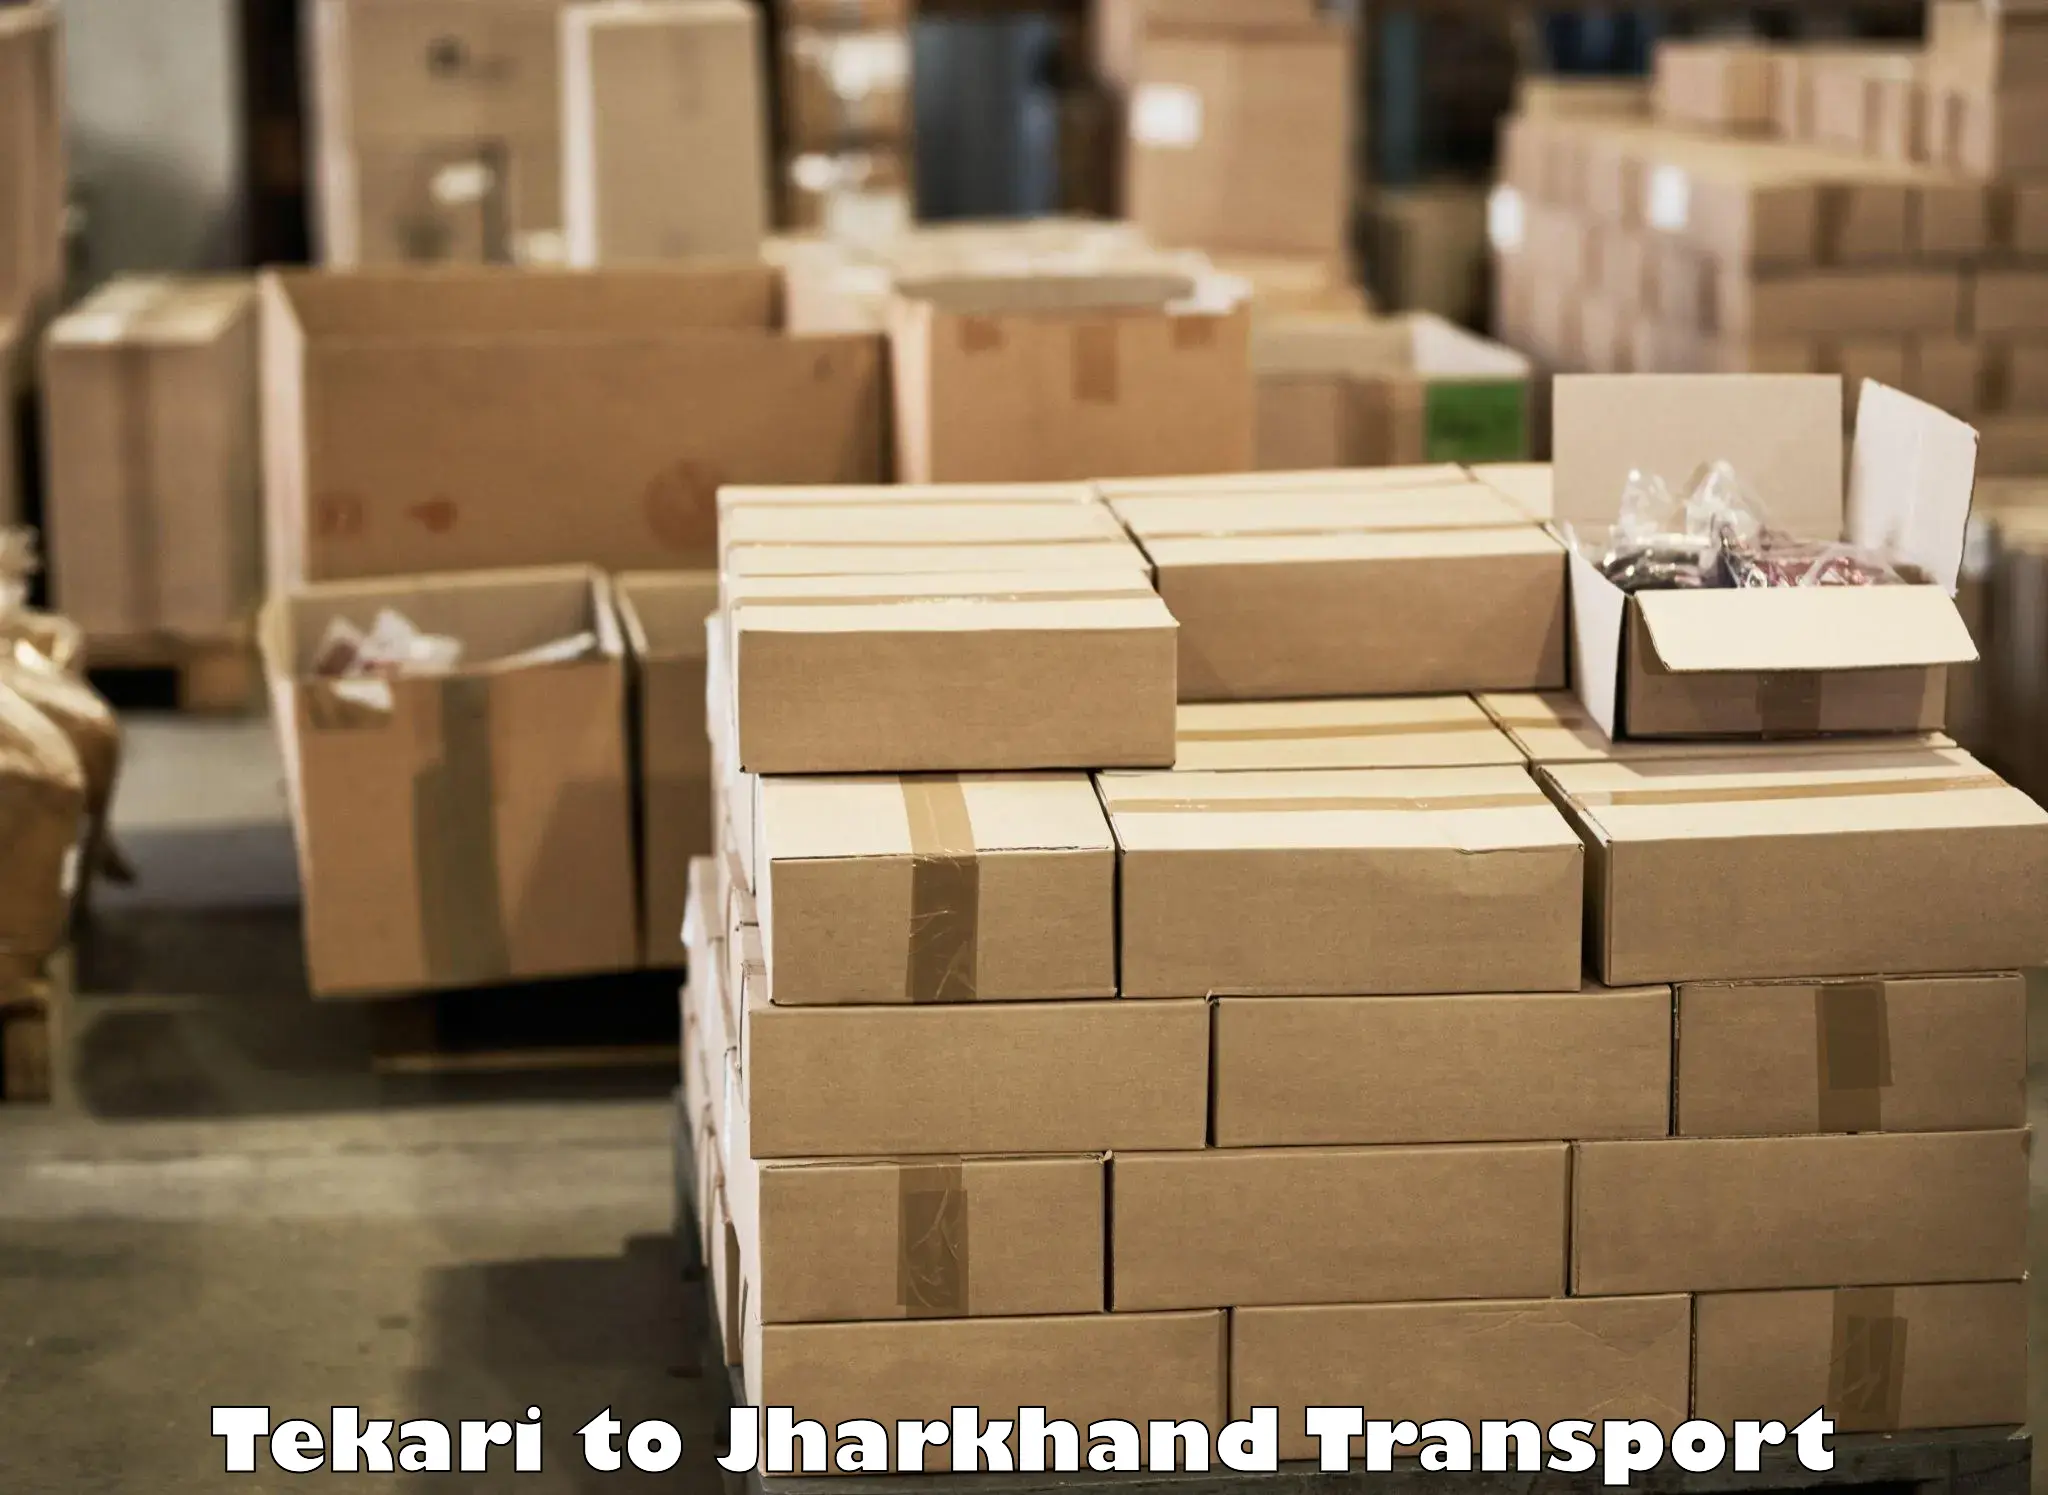 Package delivery services Tekari to Govindpur